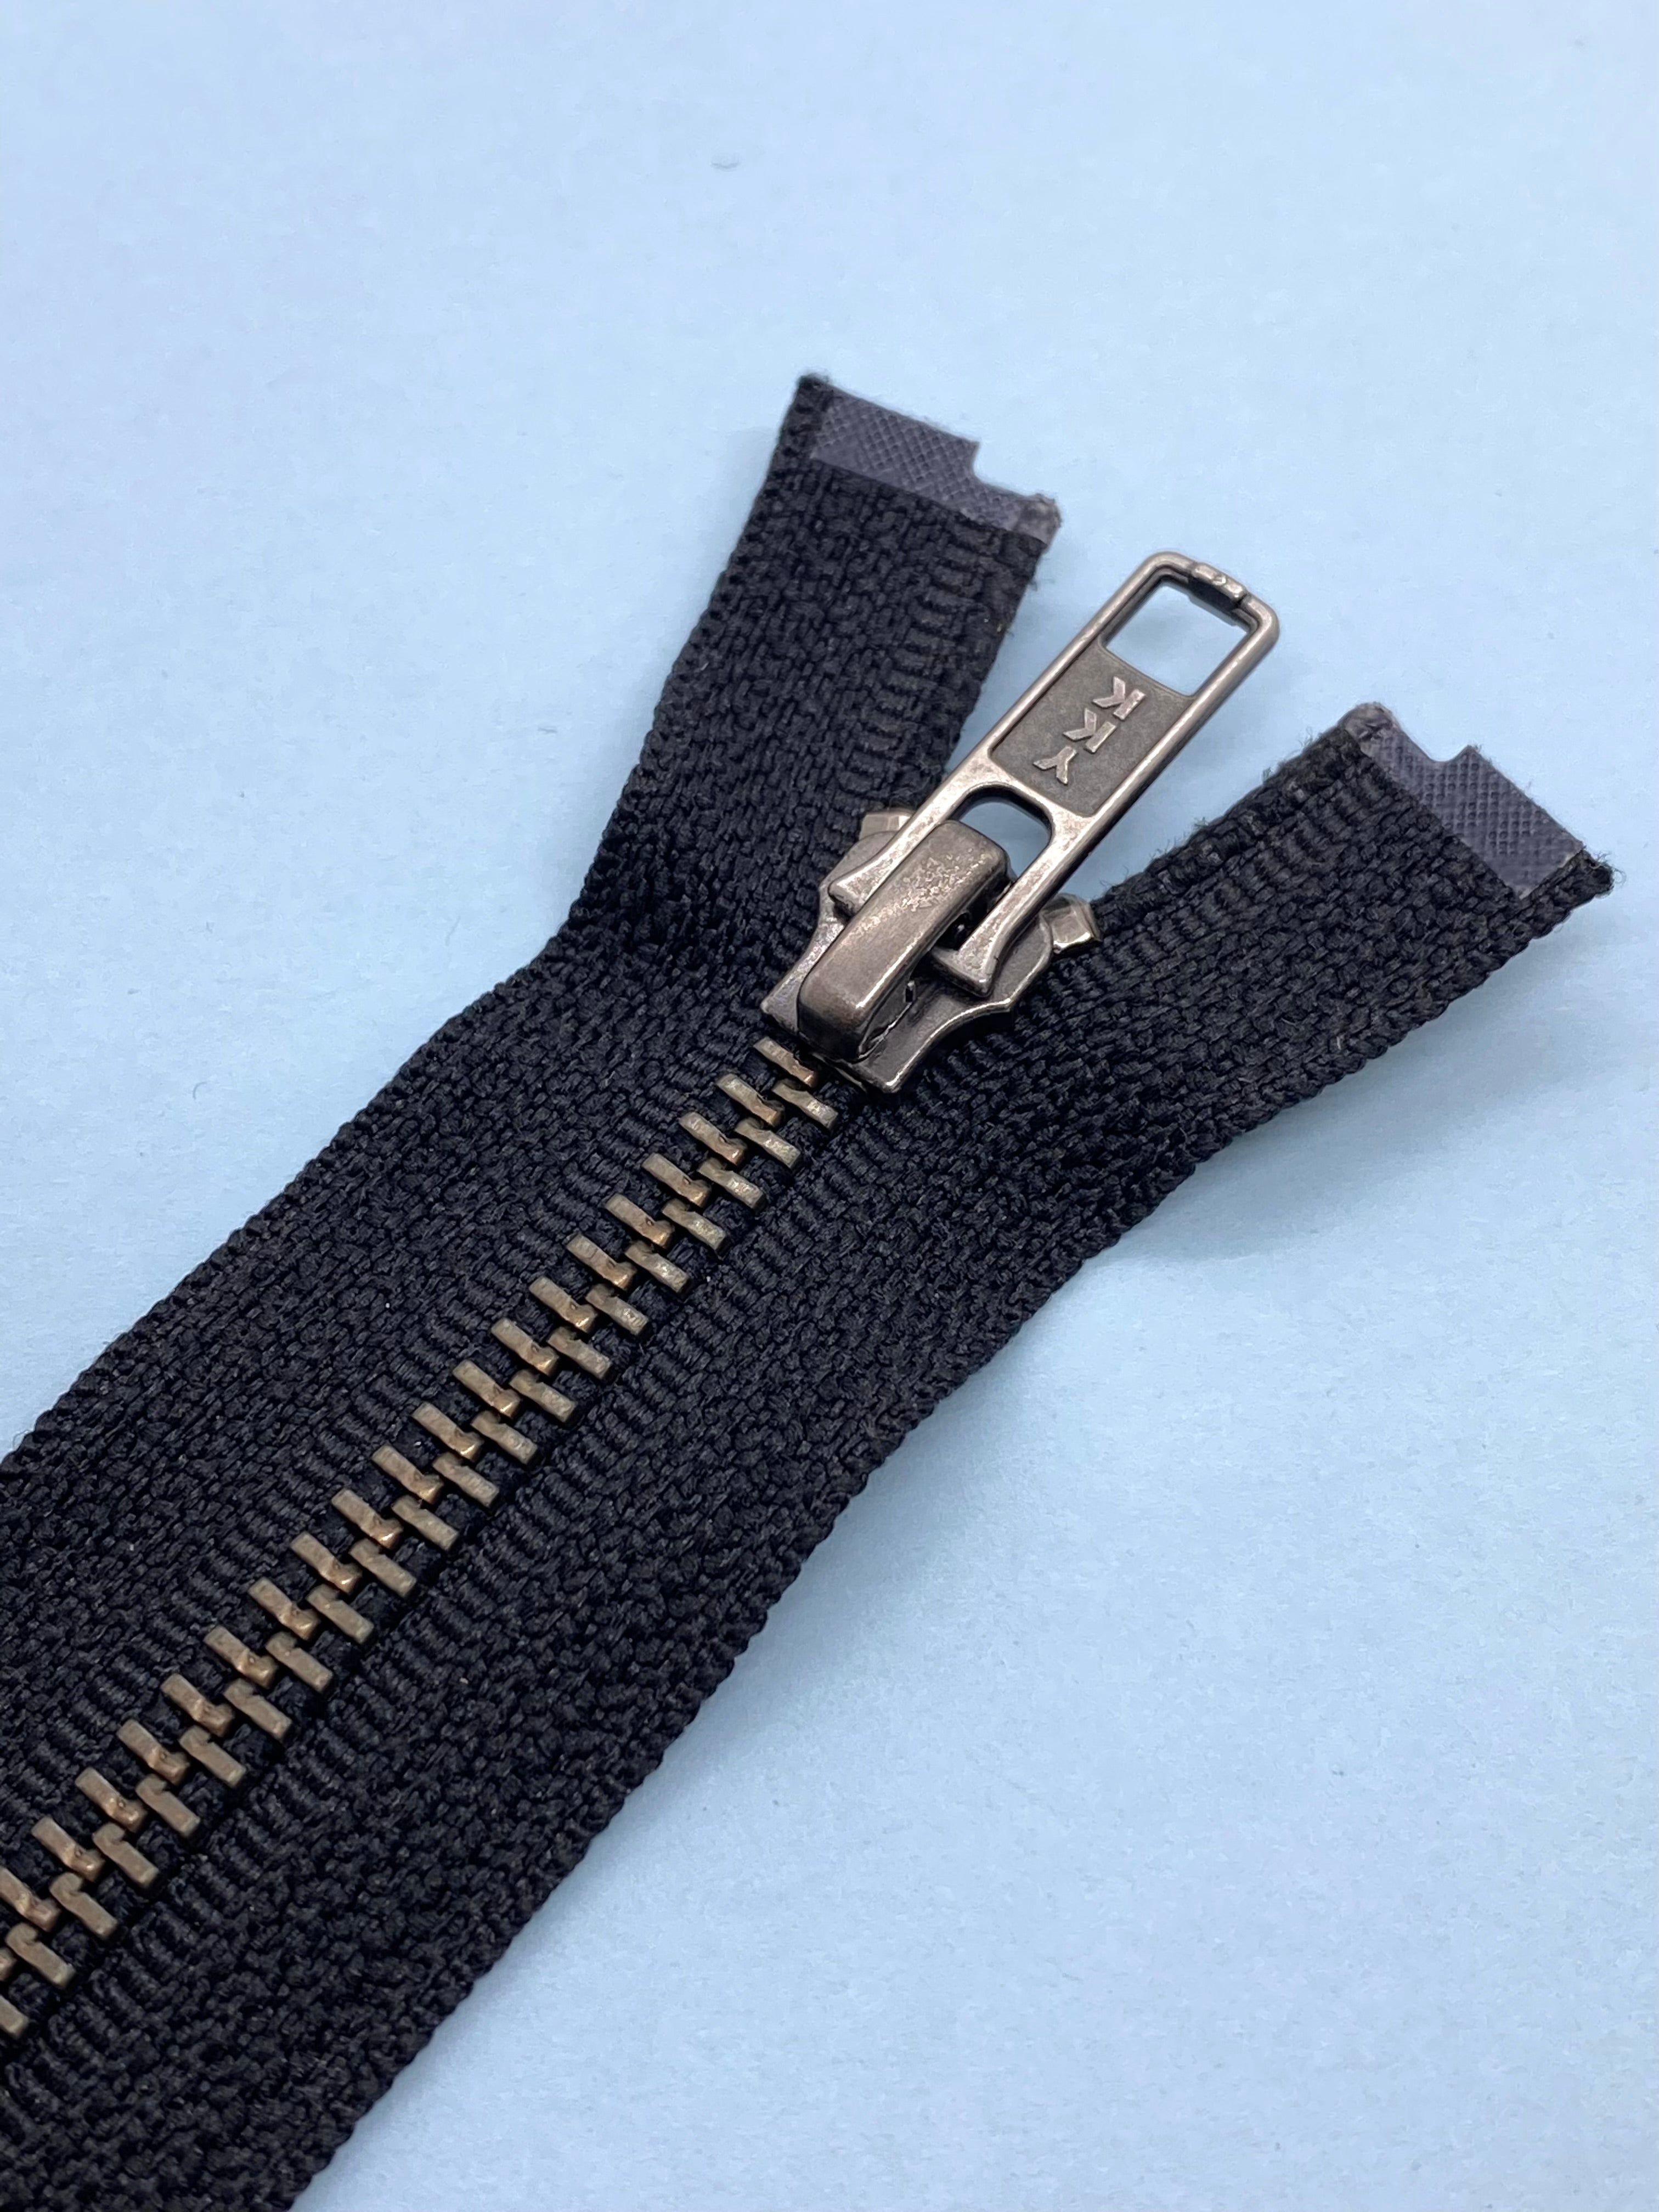 YKK #5 Molded Plastic Jacket Zipper Sliders - 2/Pack - Black (580)